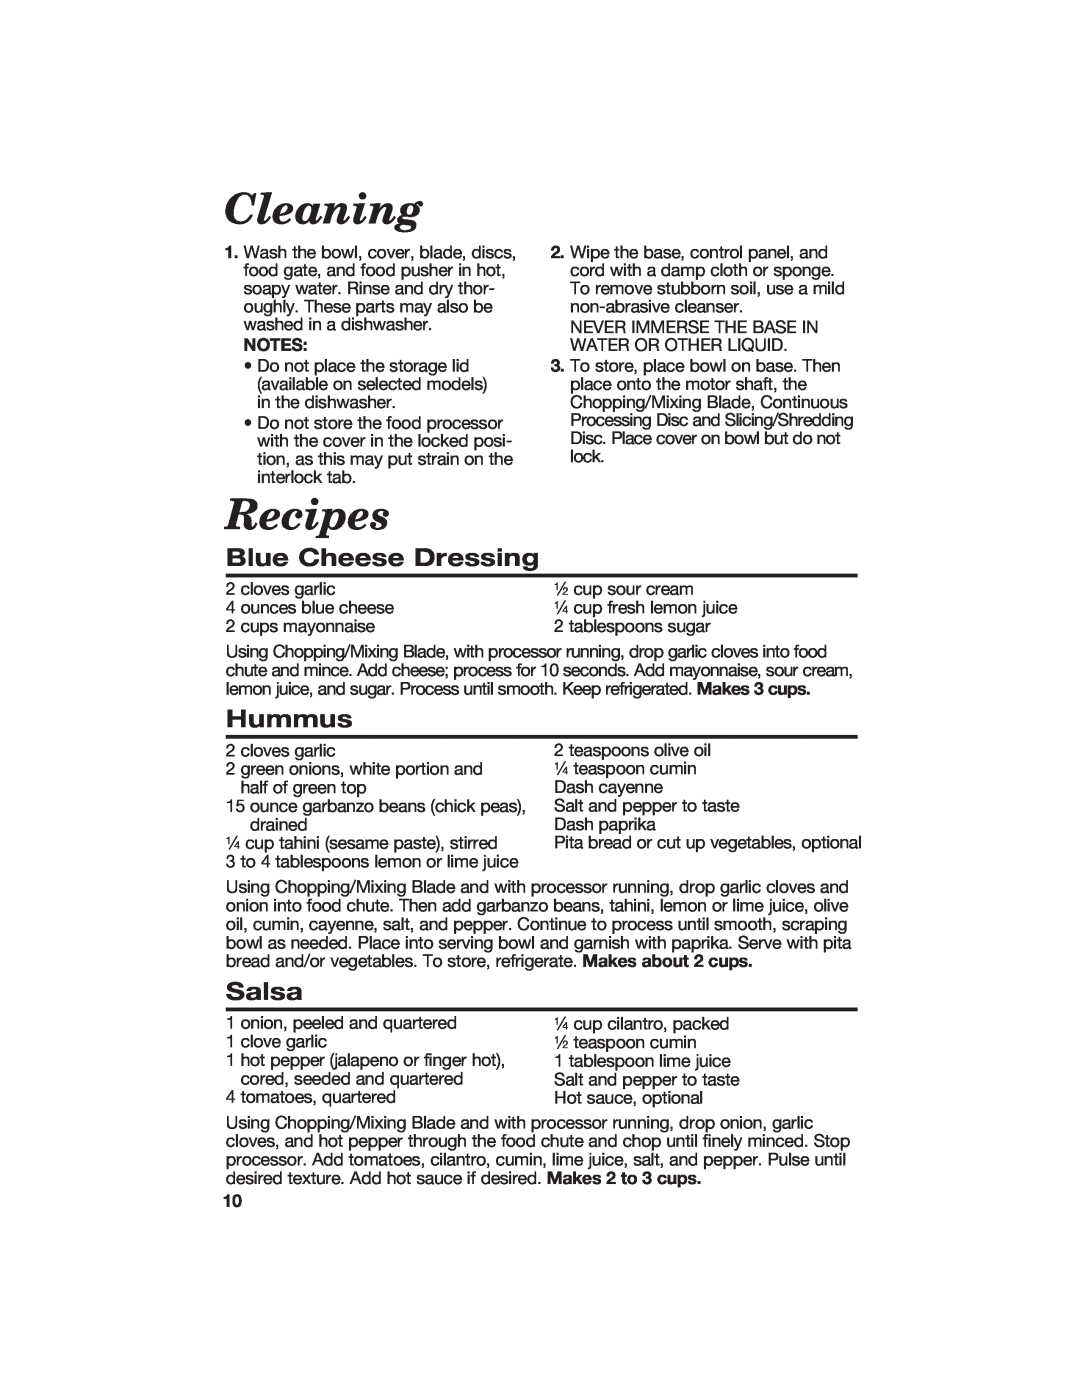 Hamilton Beach 840118100 manual Cleaning, Recipes, Blue Cheese Dressing, Hummus, Salsa 